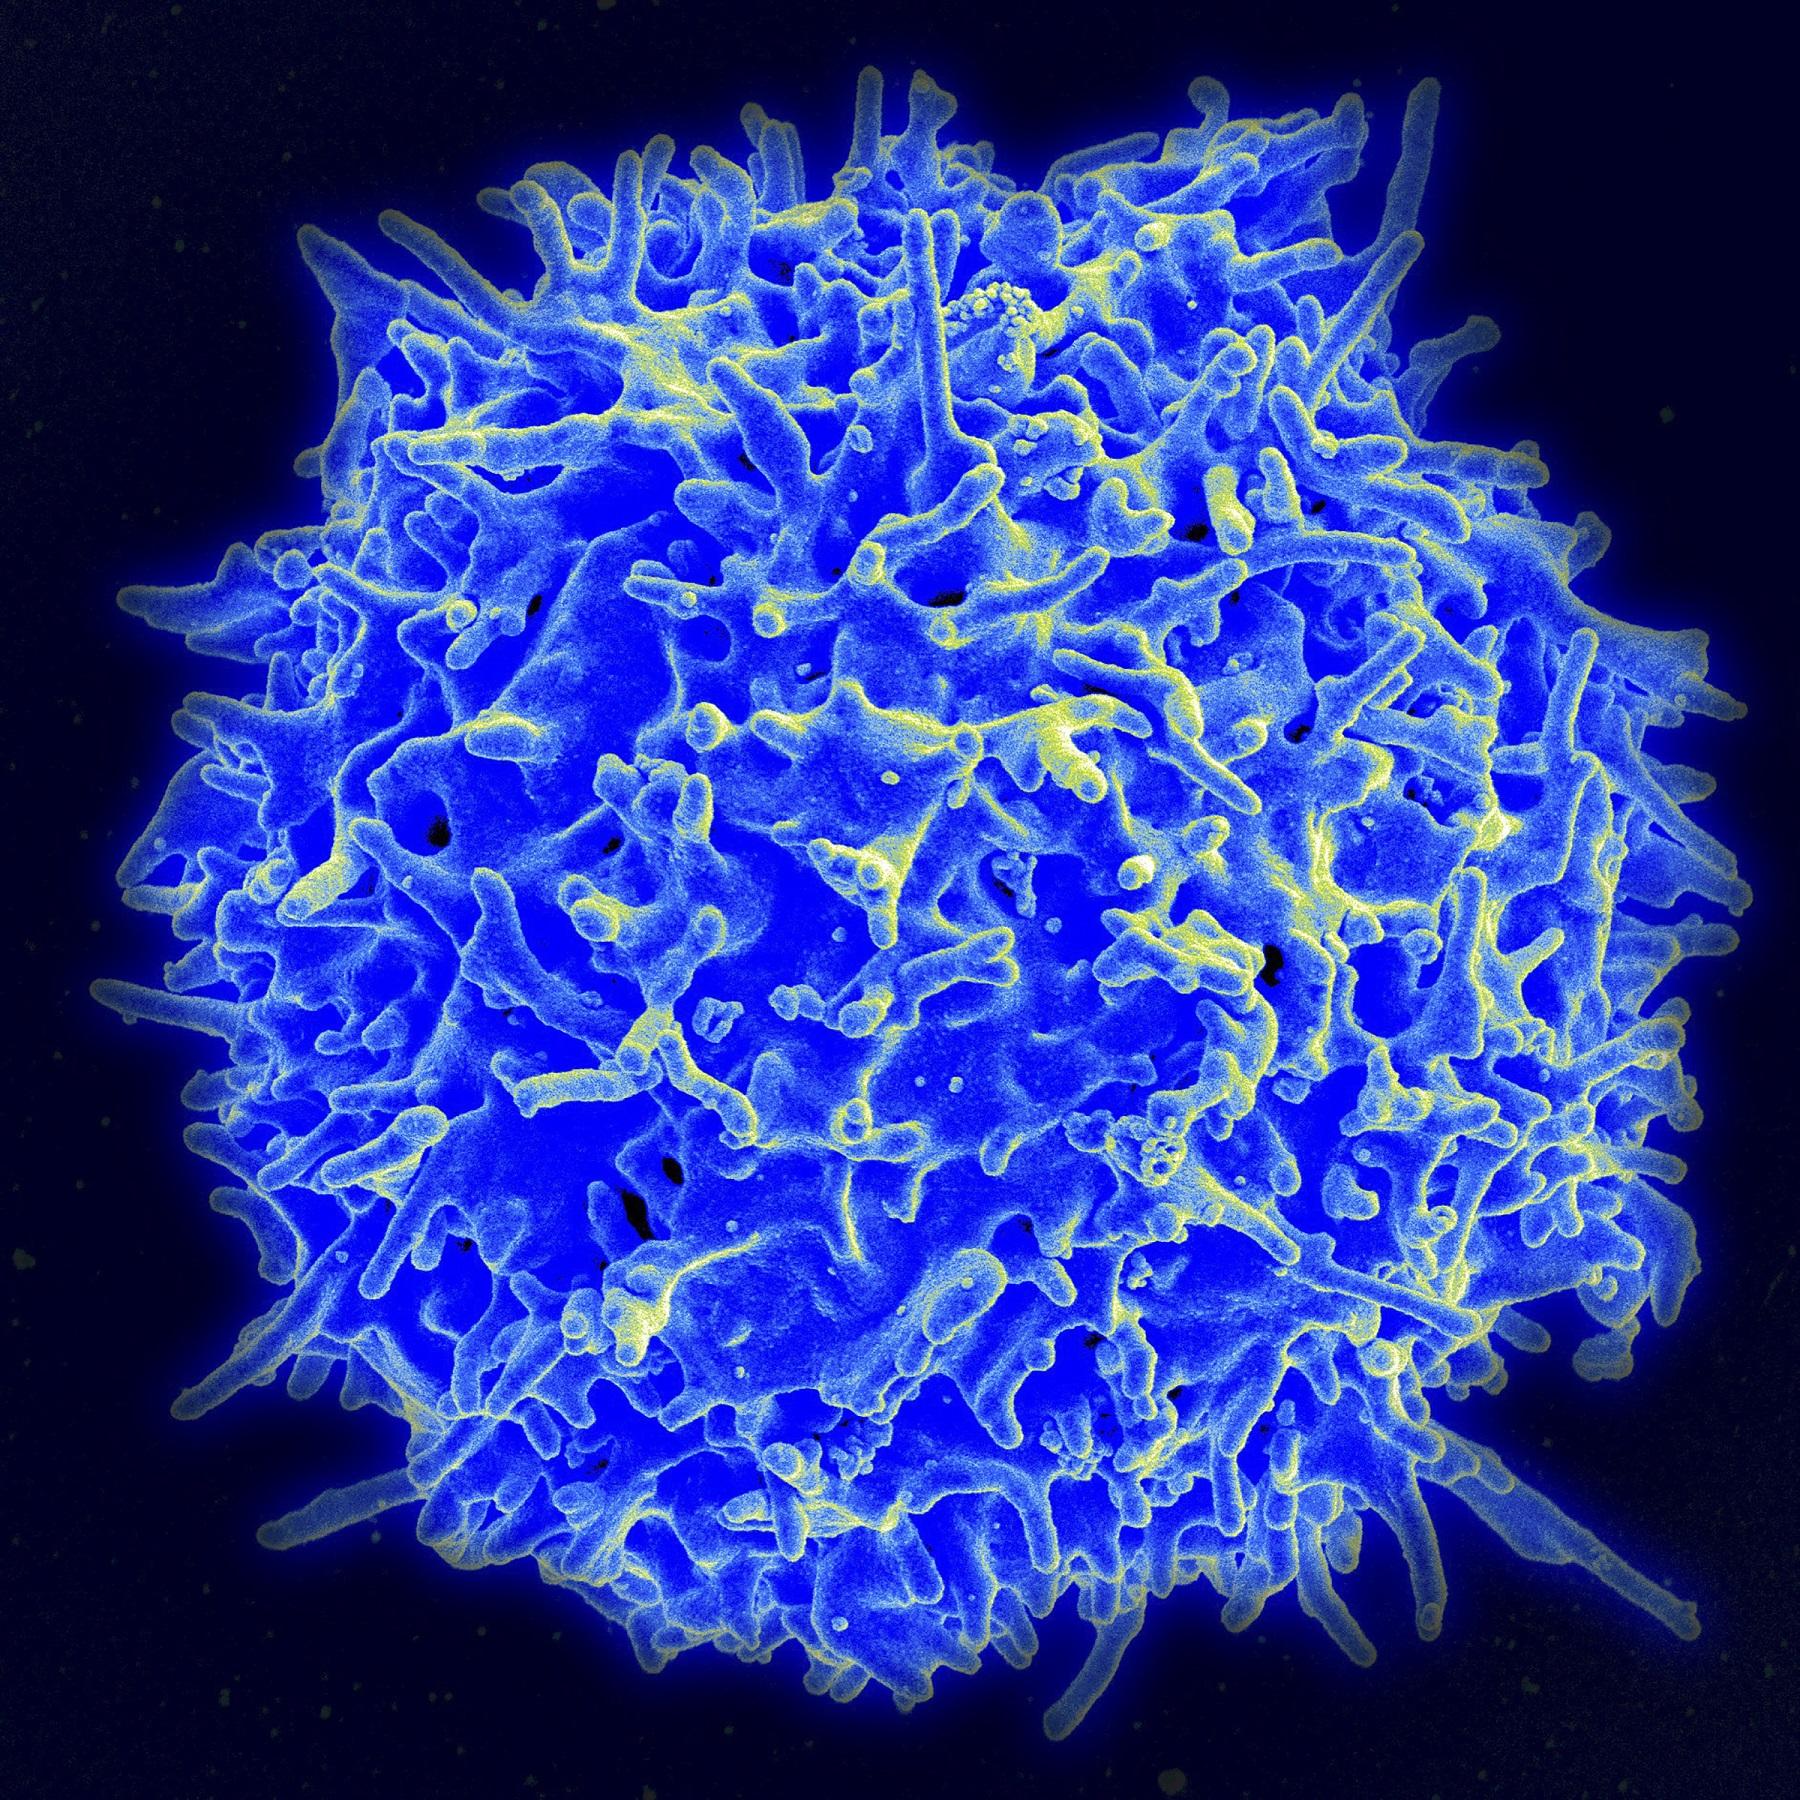 Sel-T dari flu biasa dapat memberikan perlindungan vs. COVID-19 —penelitian di Inggris GMA News Online